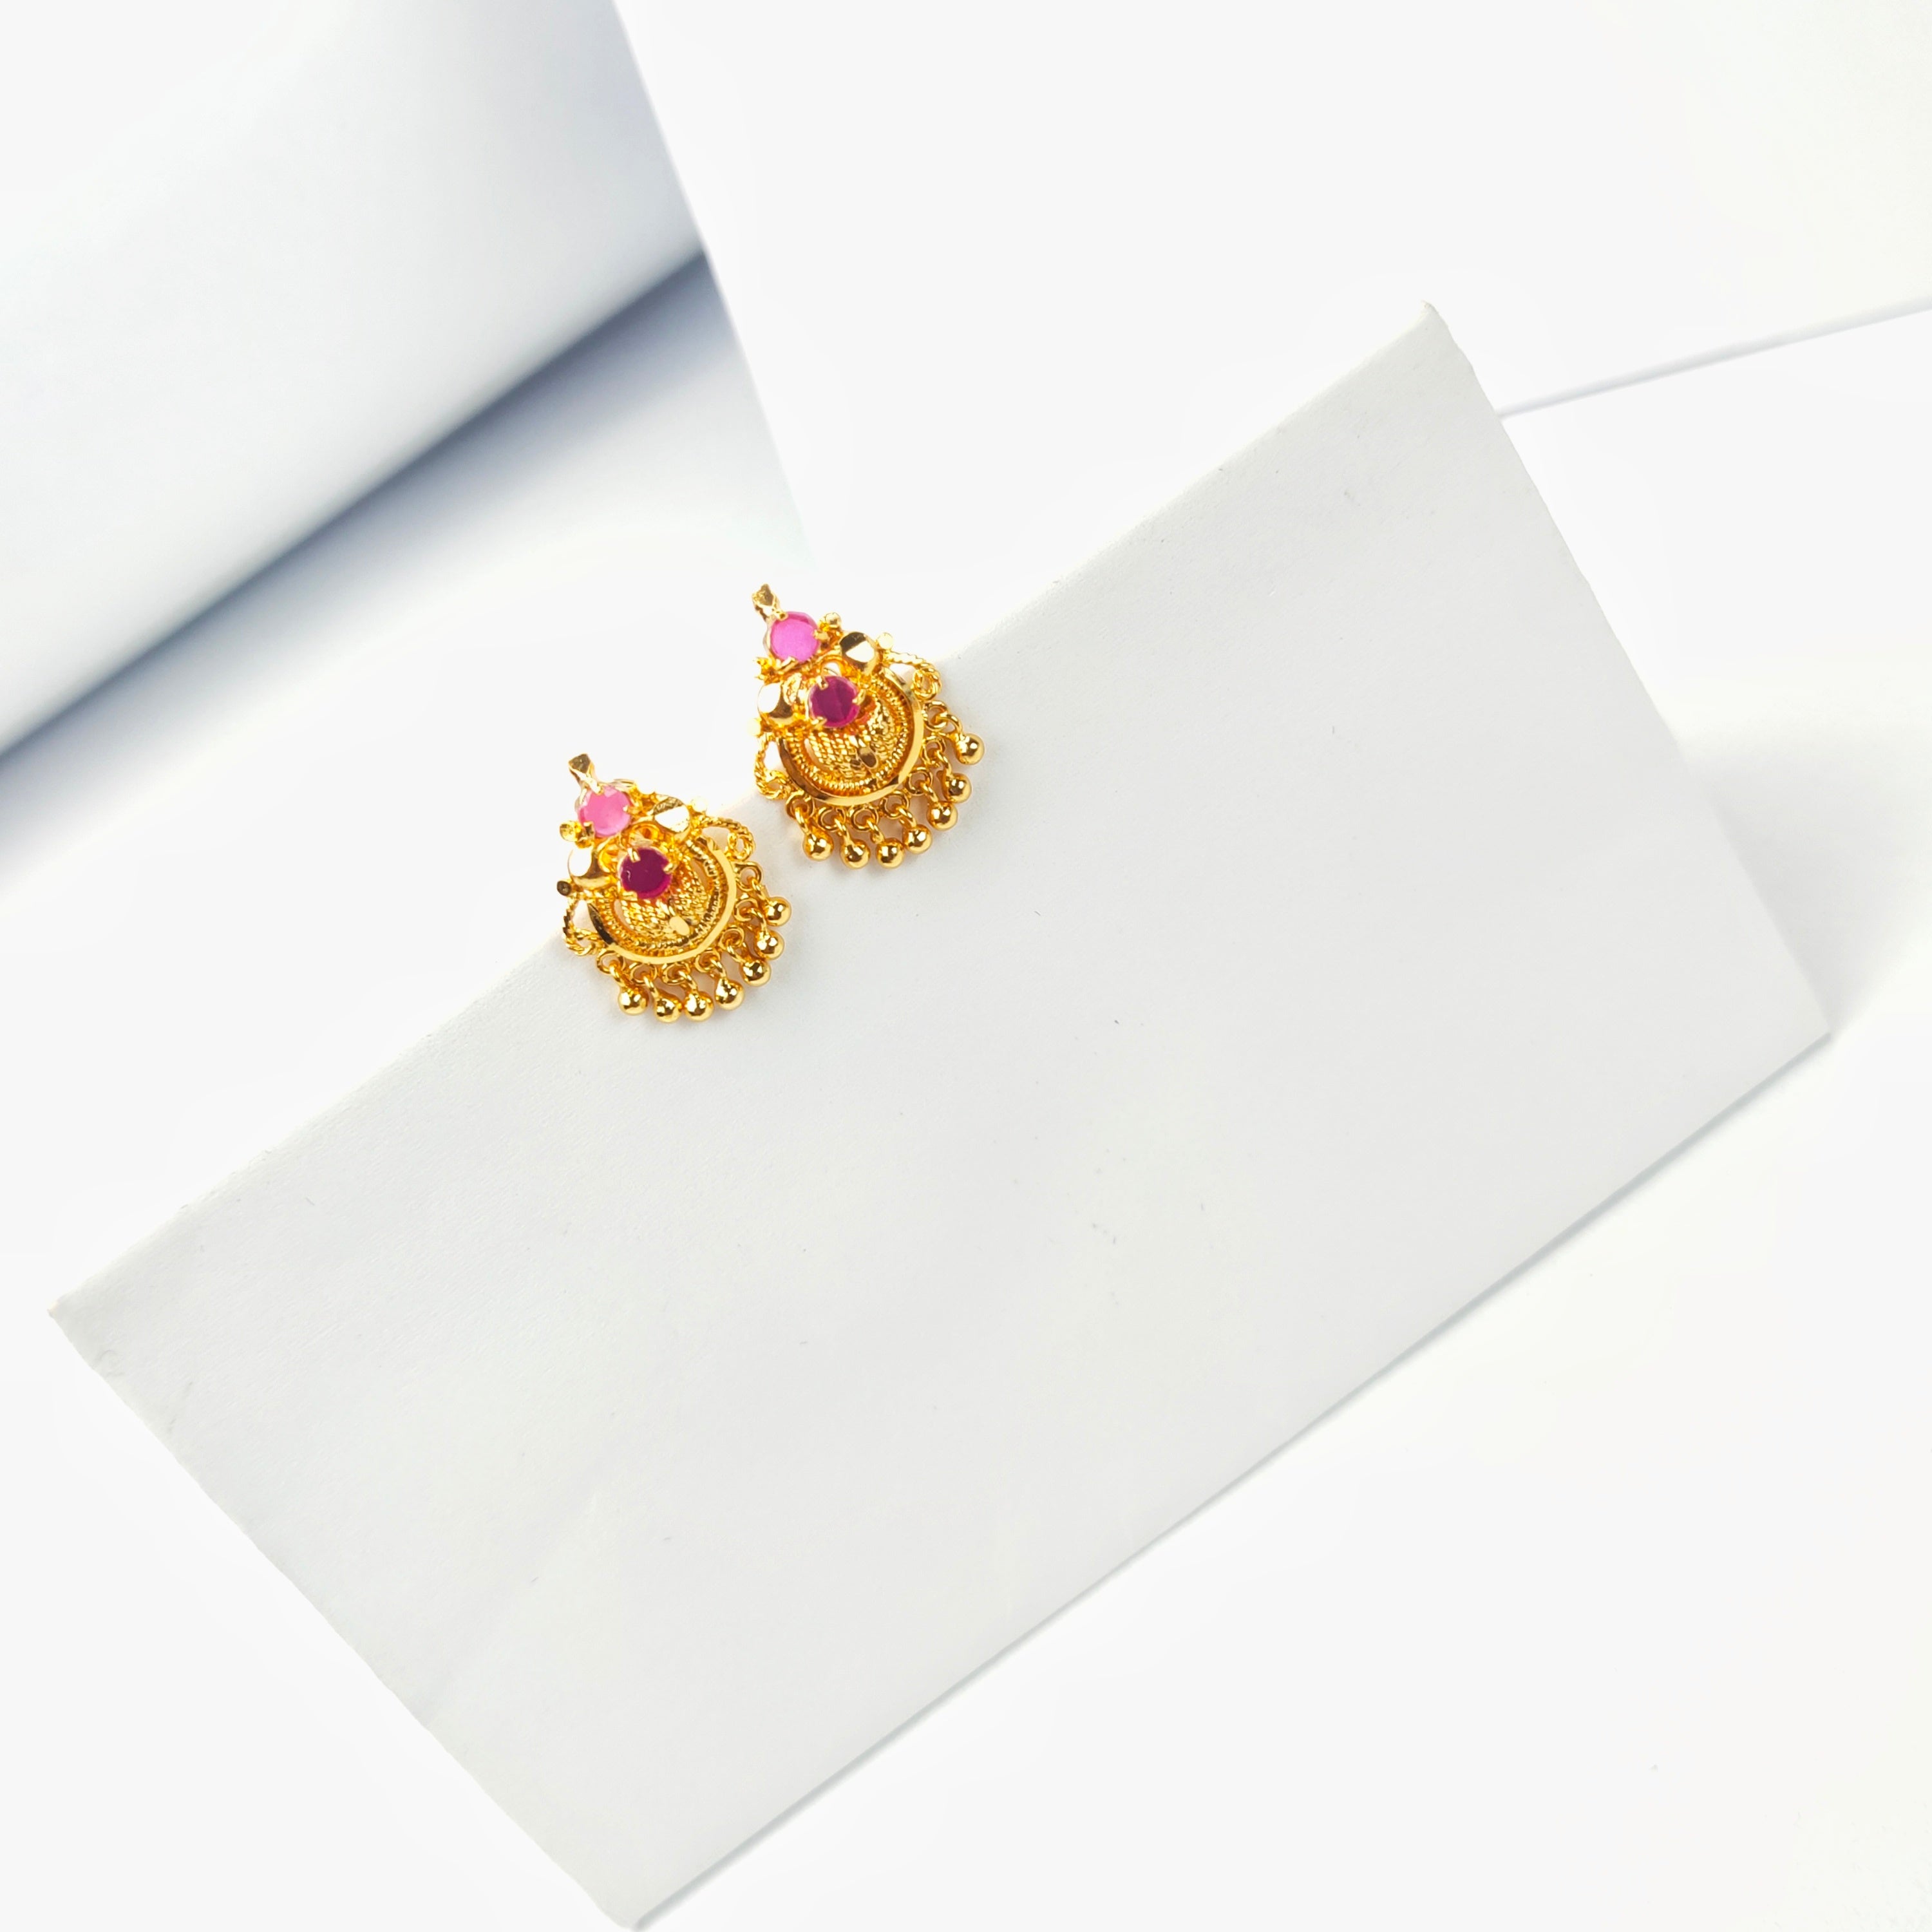 Flower Jewellery for Haldi | Make Your Haldi Memorable - Saubhagyavati.in